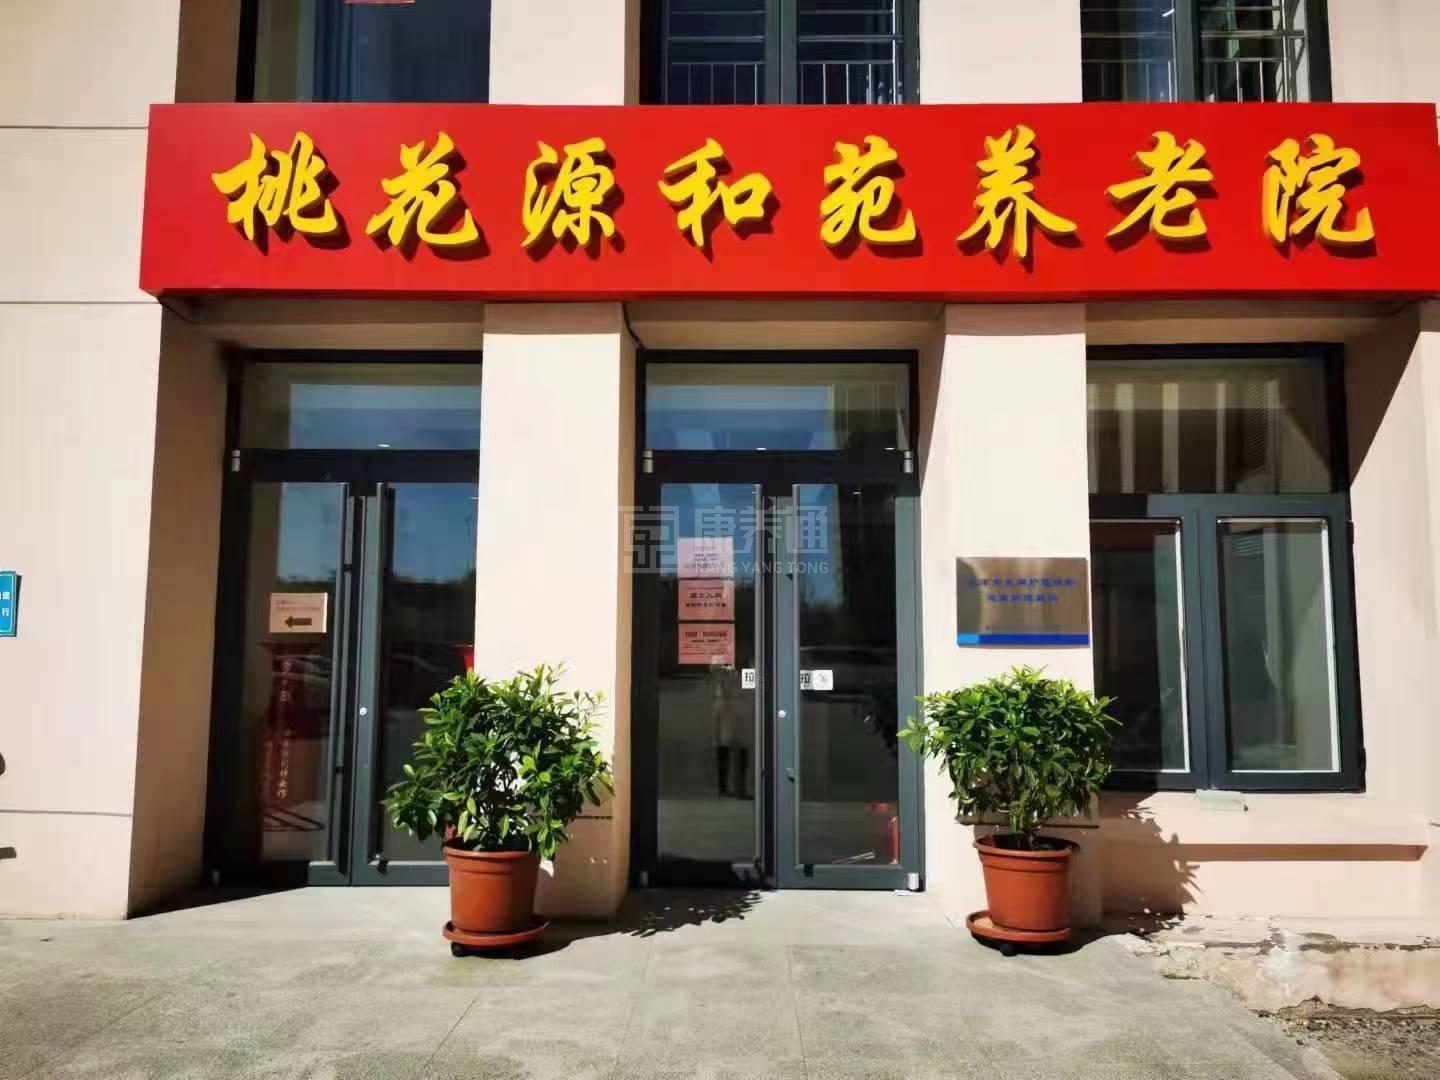 天津市红桥区桃花源和苑养老院服务项目图4让长者主动而自立地生活